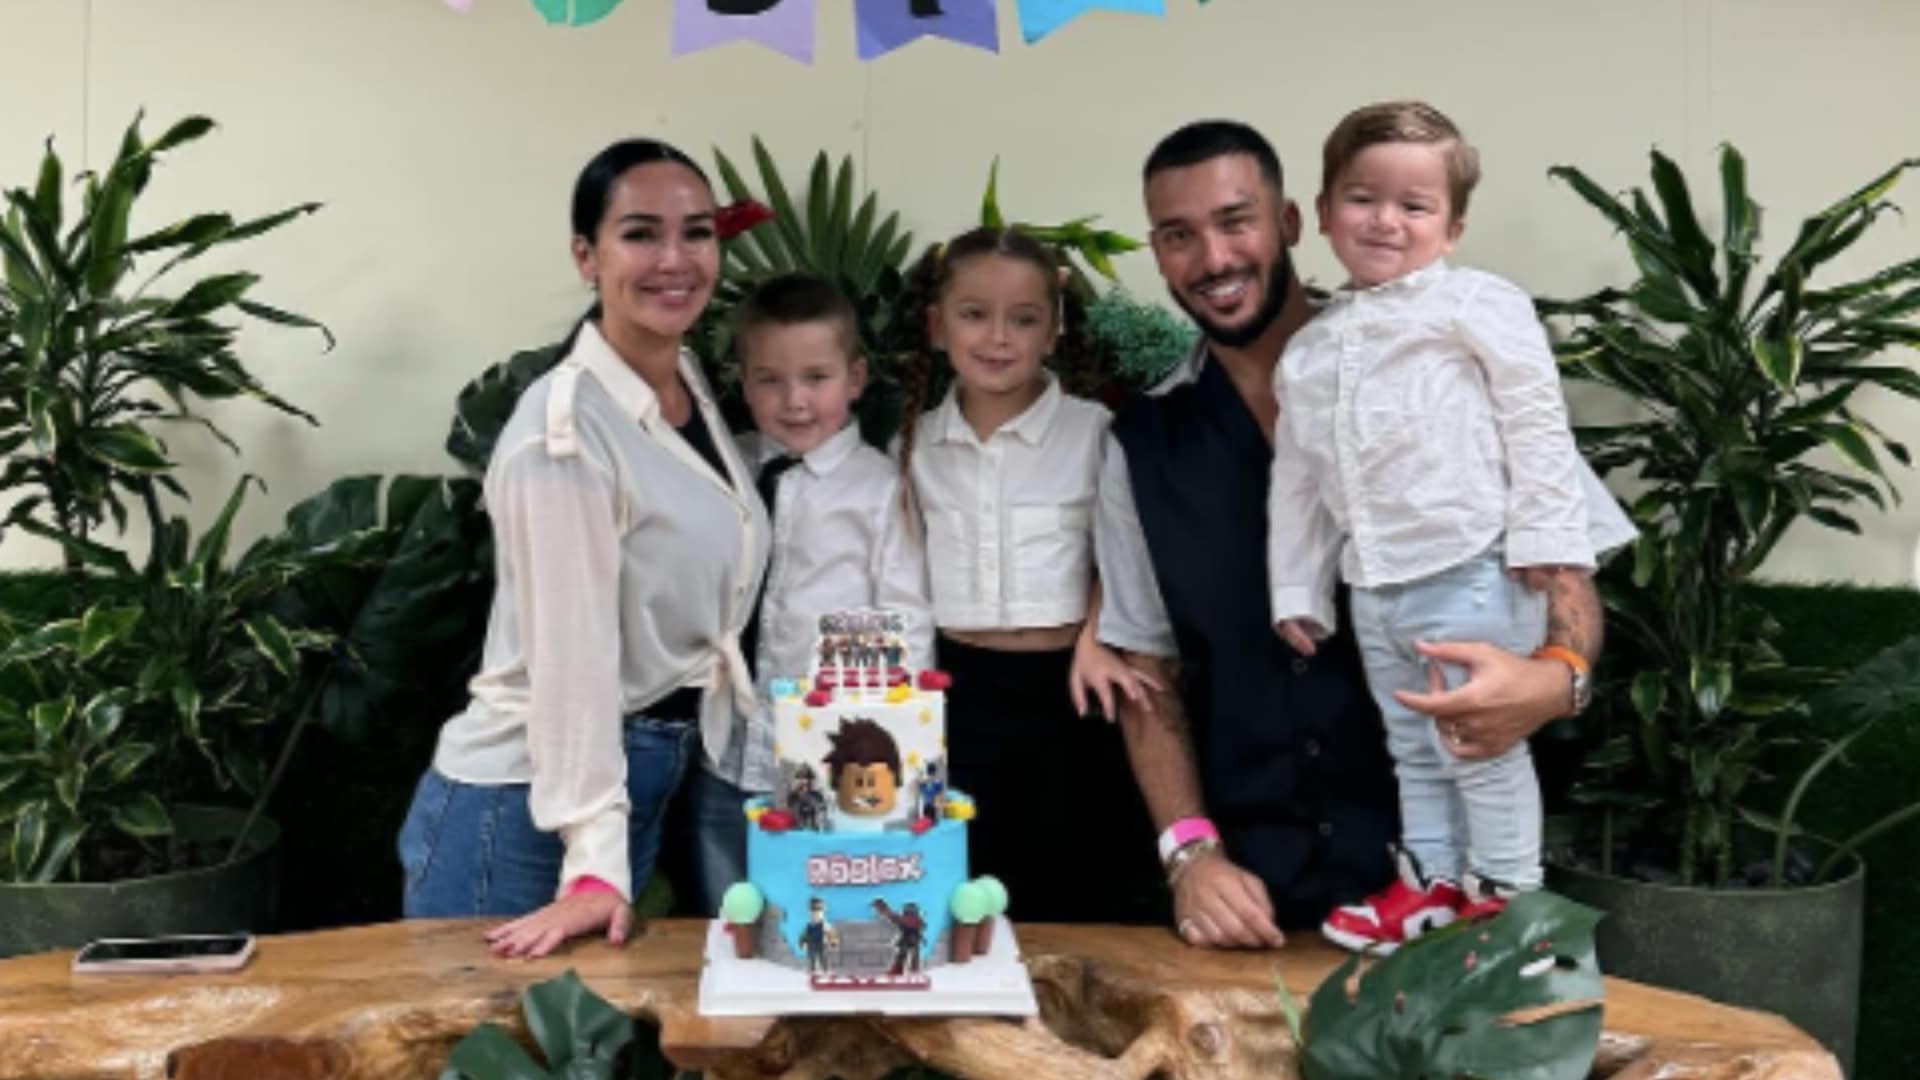 Jazz Correia : le comportement de son fils lors de sa fête d'anniversaire scandalise les internautes